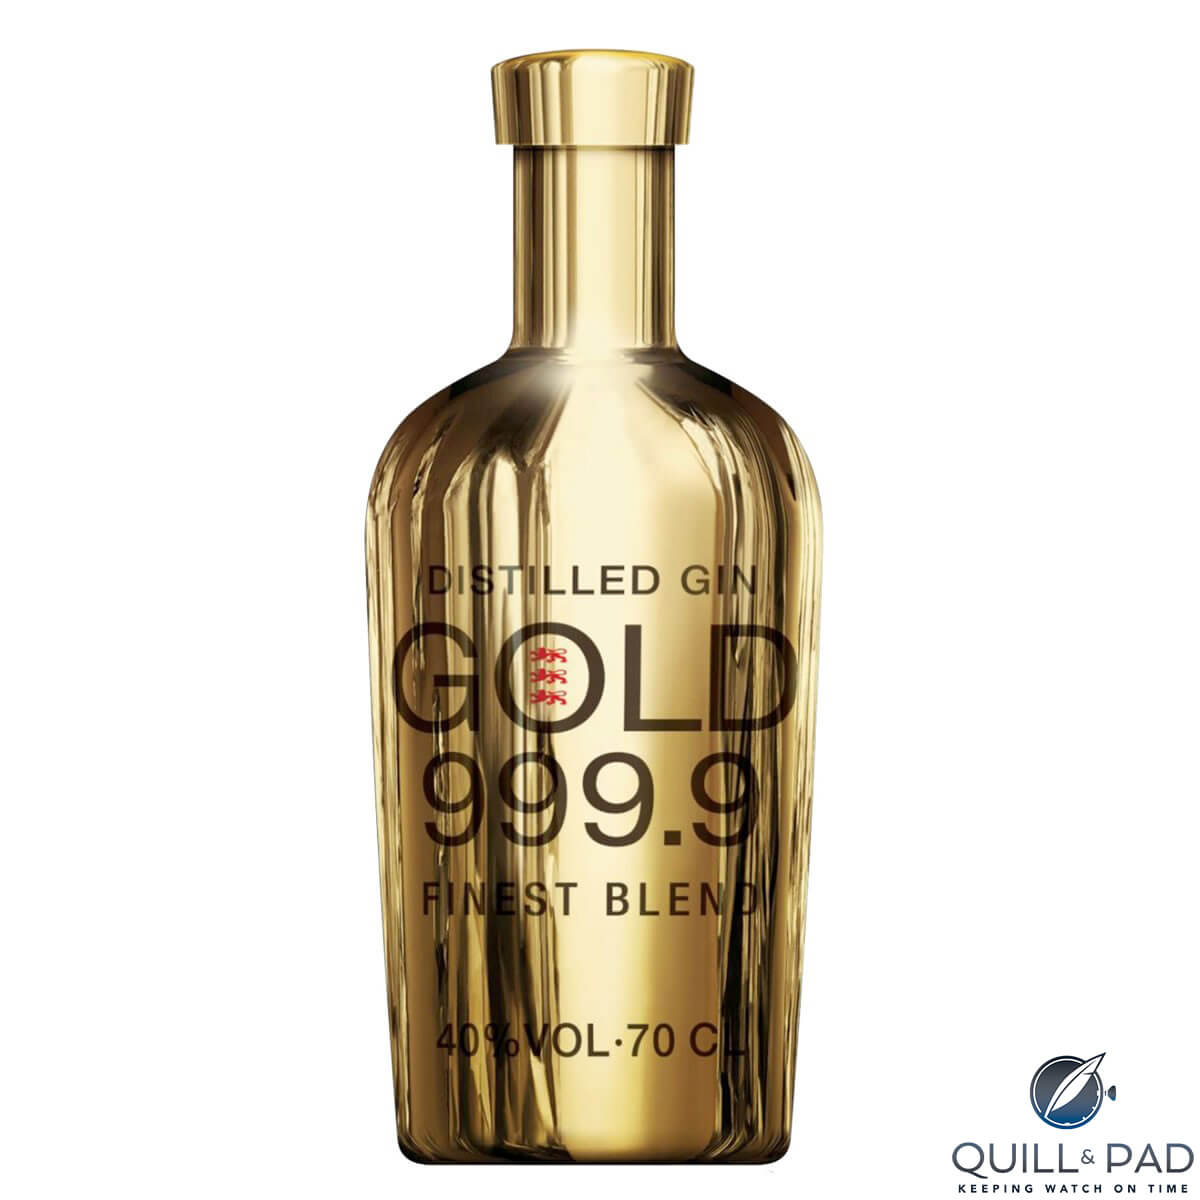 Gold 999.9 gin